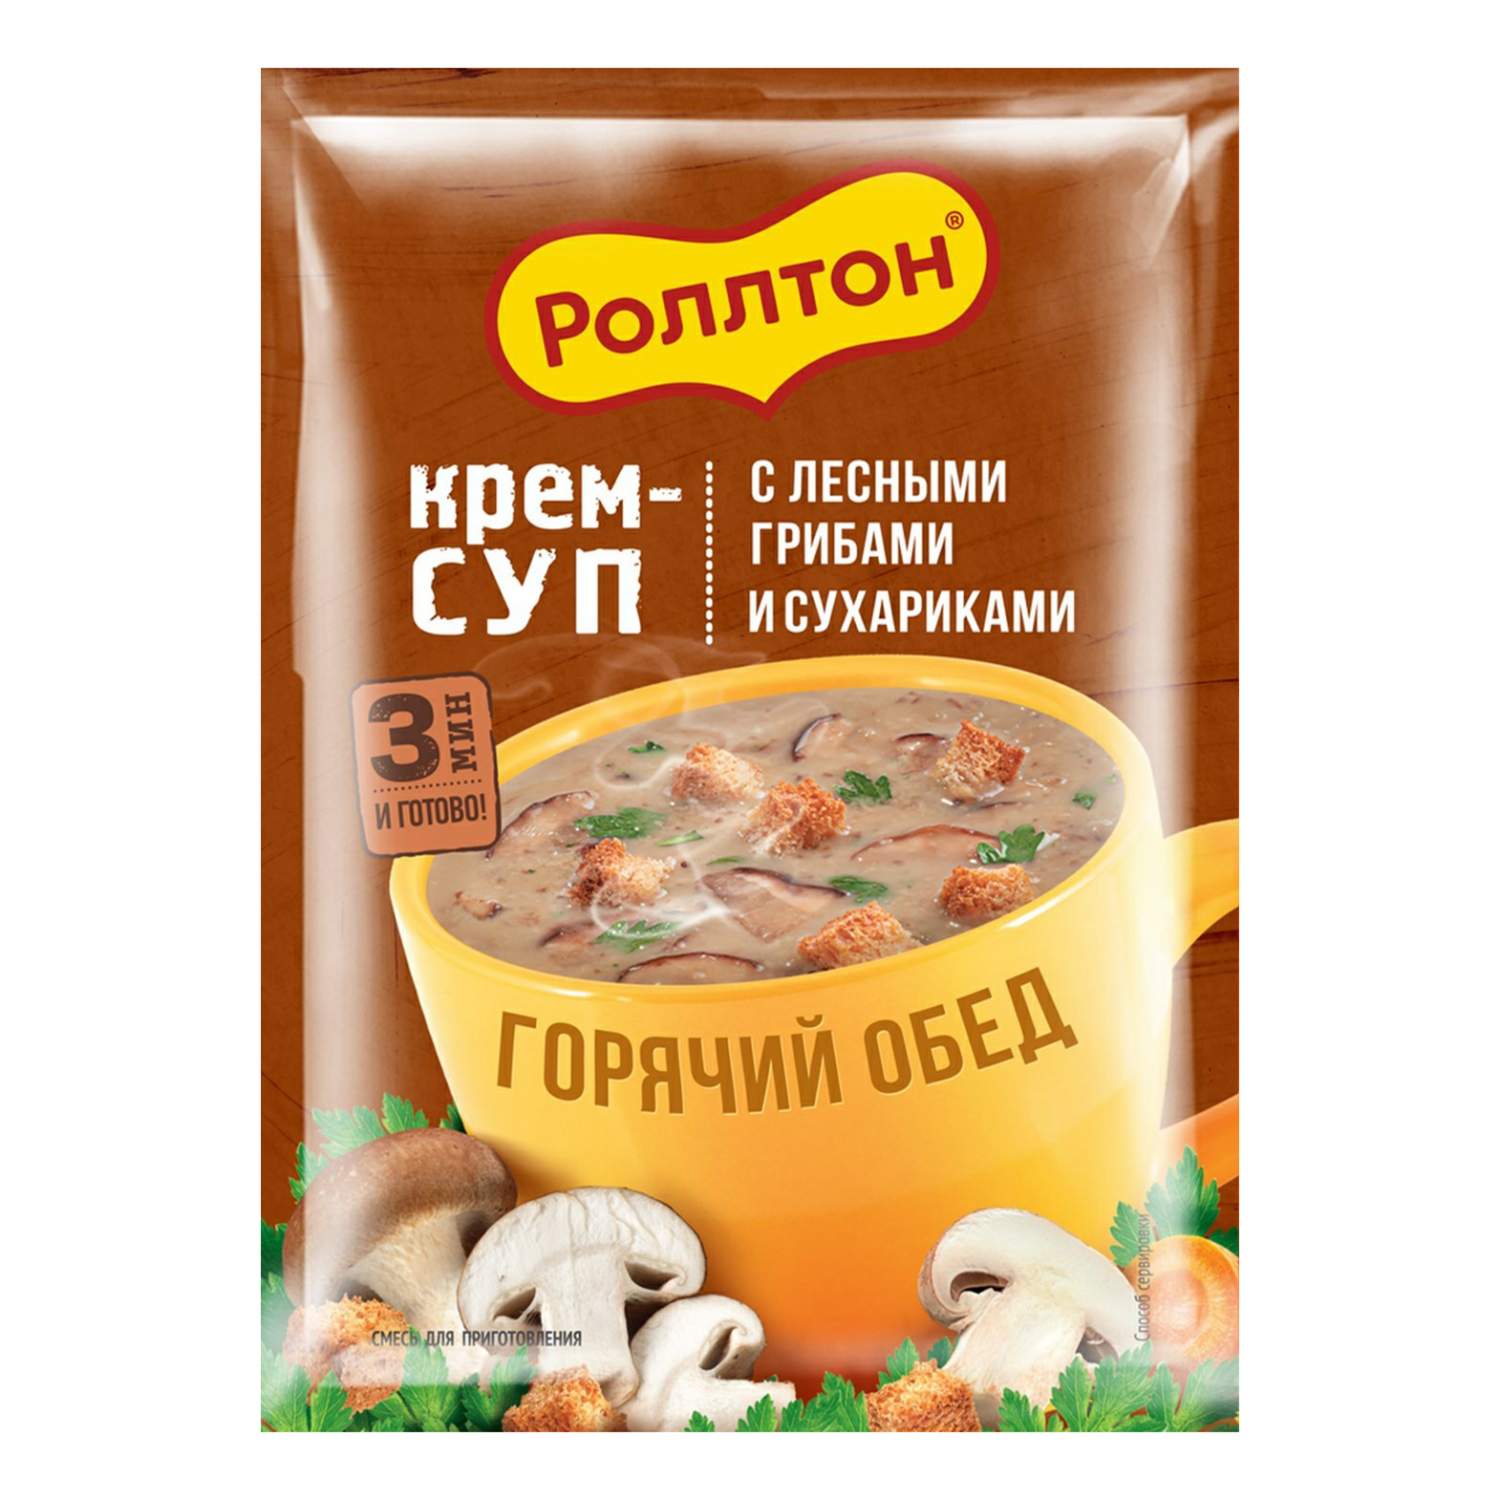 cмесь (сухая) для приготовления супа. крем-суп из лесных грибов с сухариками. роллтон 21 г